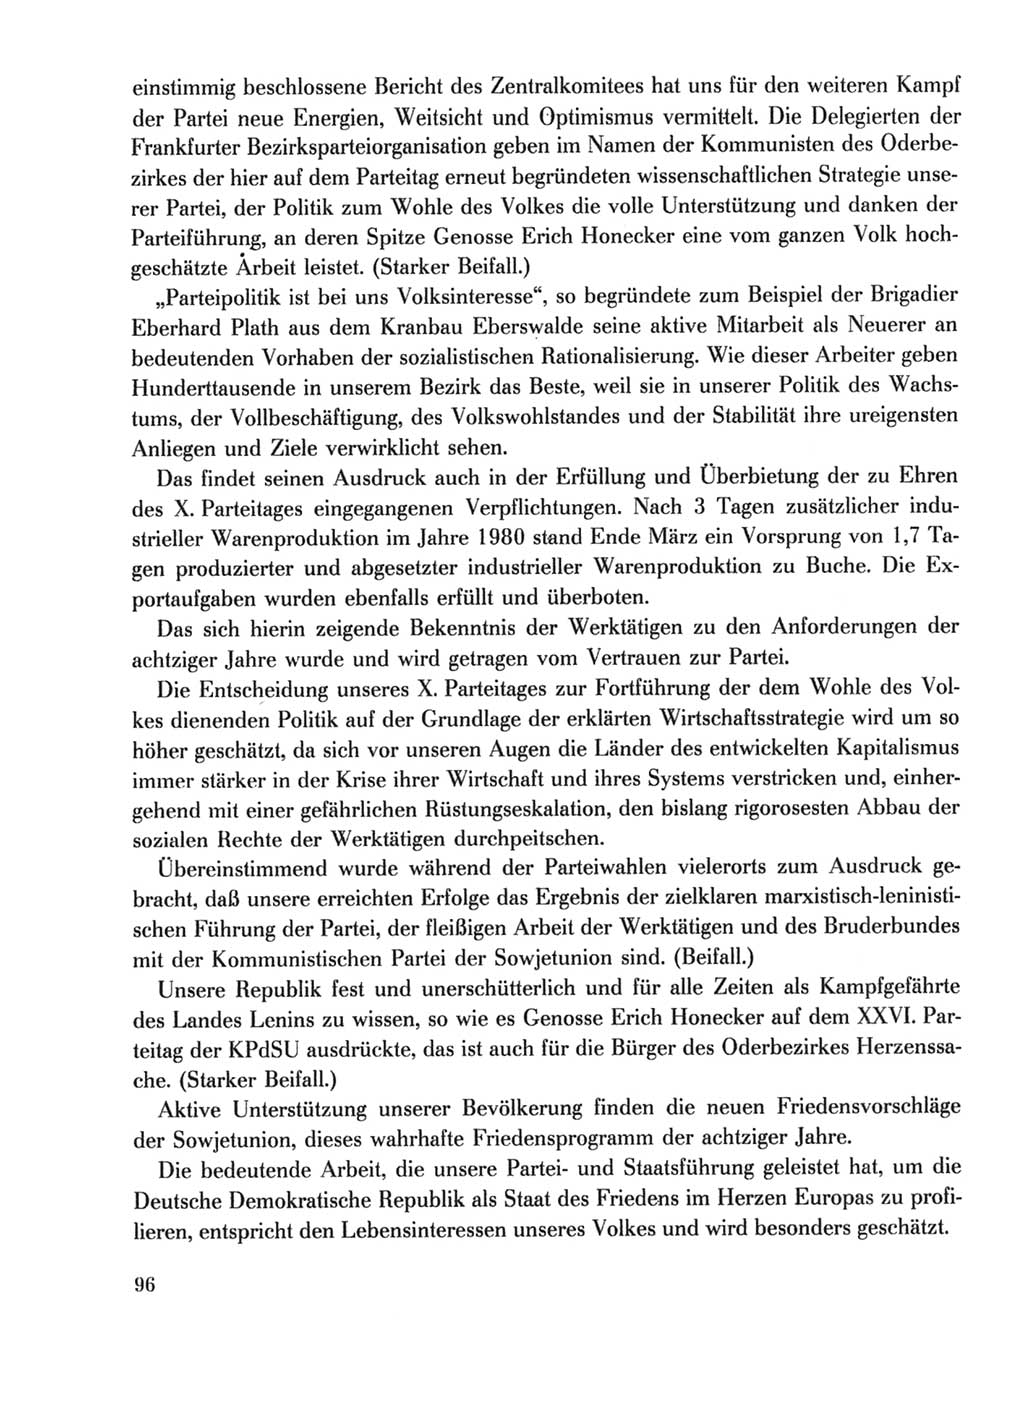 Protokoll der Verhandlungen des Ⅹ. Parteitages der Sozialistischen Einheitspartei Deutschlands (SED) [Deutsche Demokratische Republik (DDR)] 1981, Band 2, Seite 96 (Prot. Verh. Ⅹ. PT SED DDR 1981, Bd. 2, S. 96)